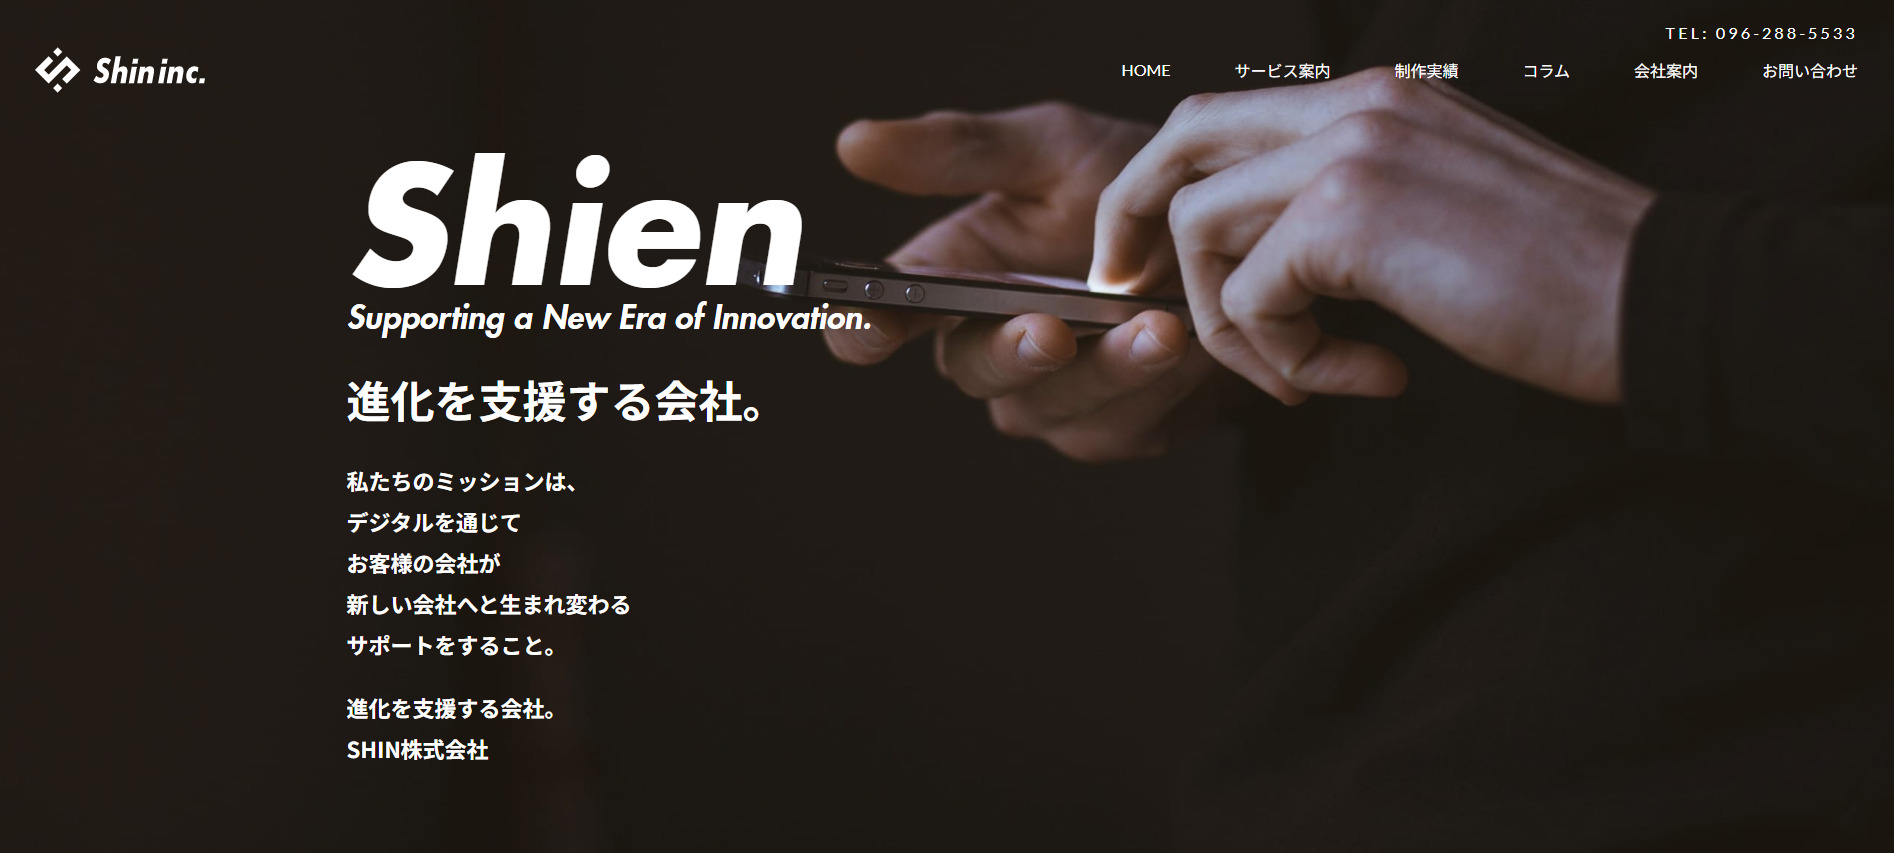 SHIN株式会社のトップページ